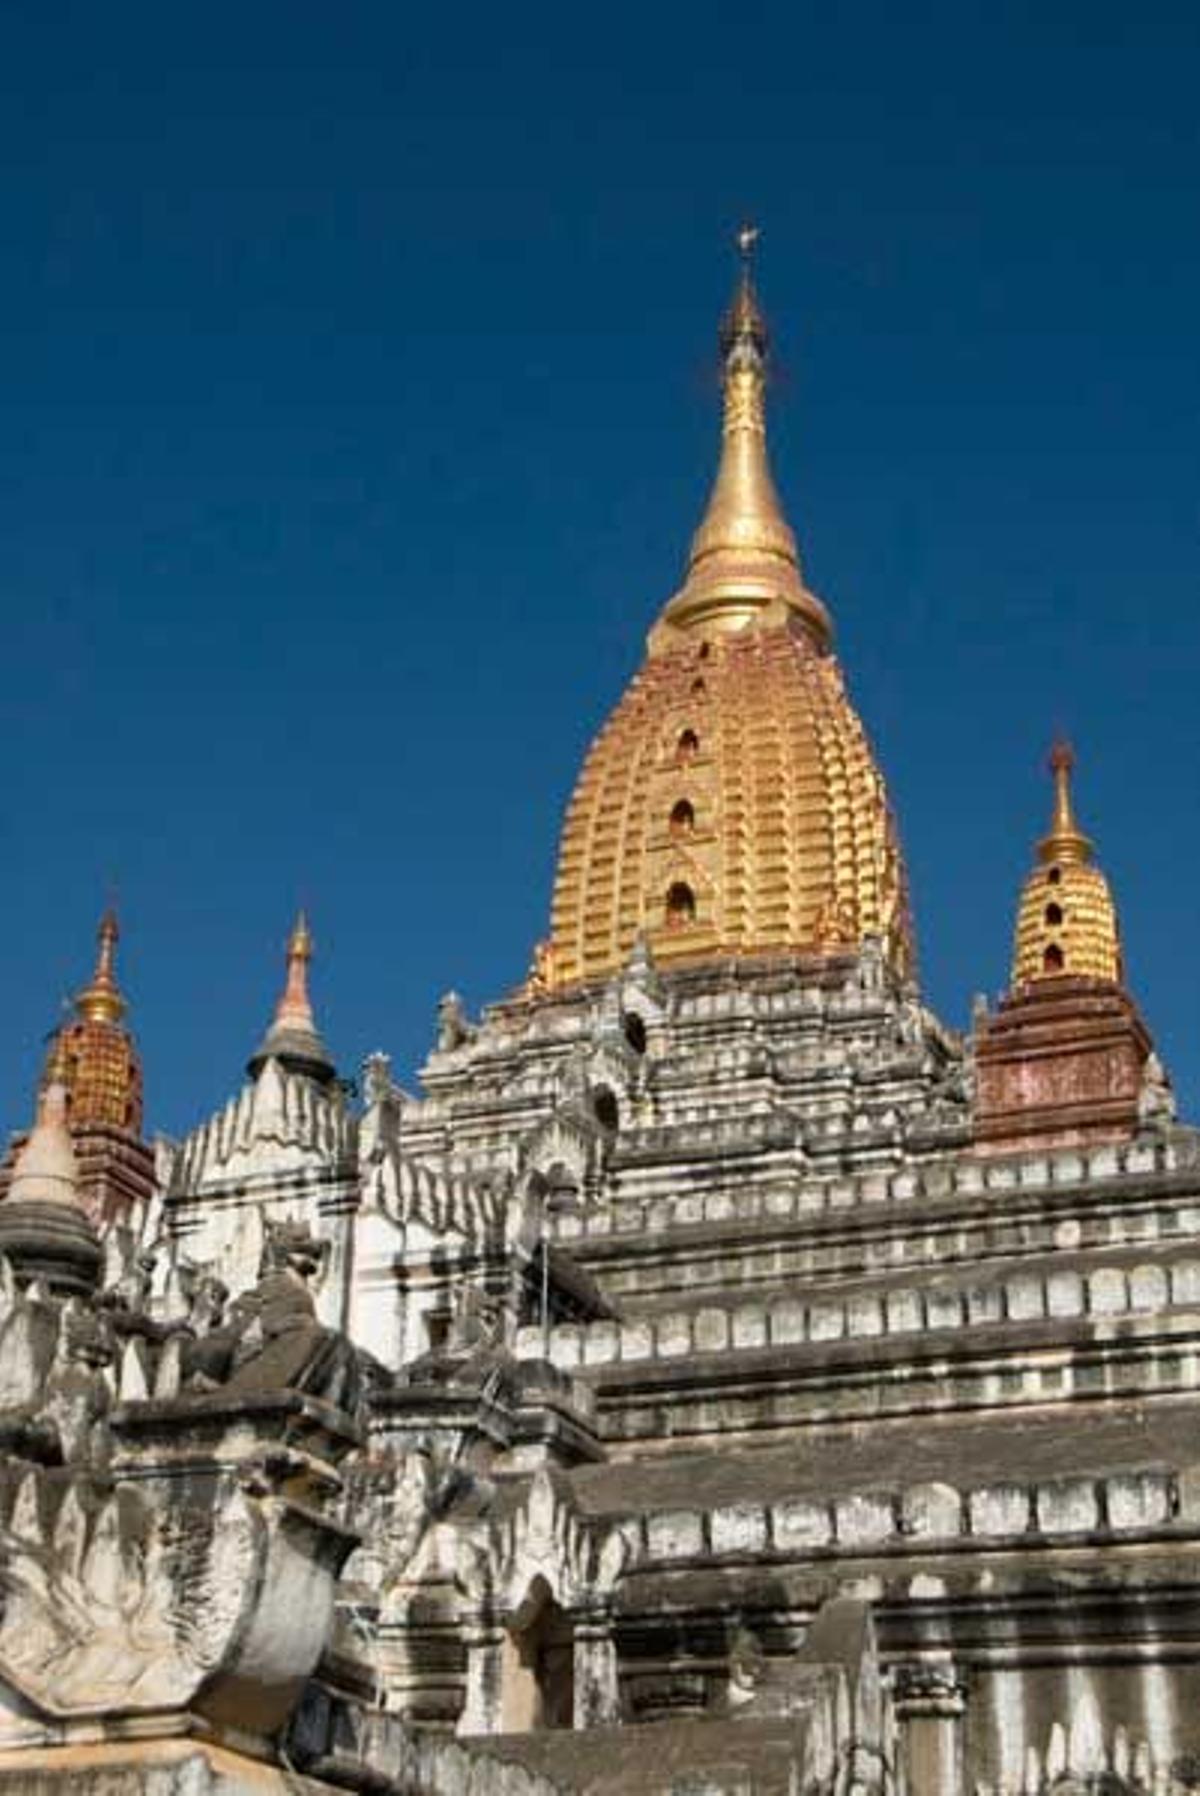 El Templo Ananda de Bagan data del año 1105.